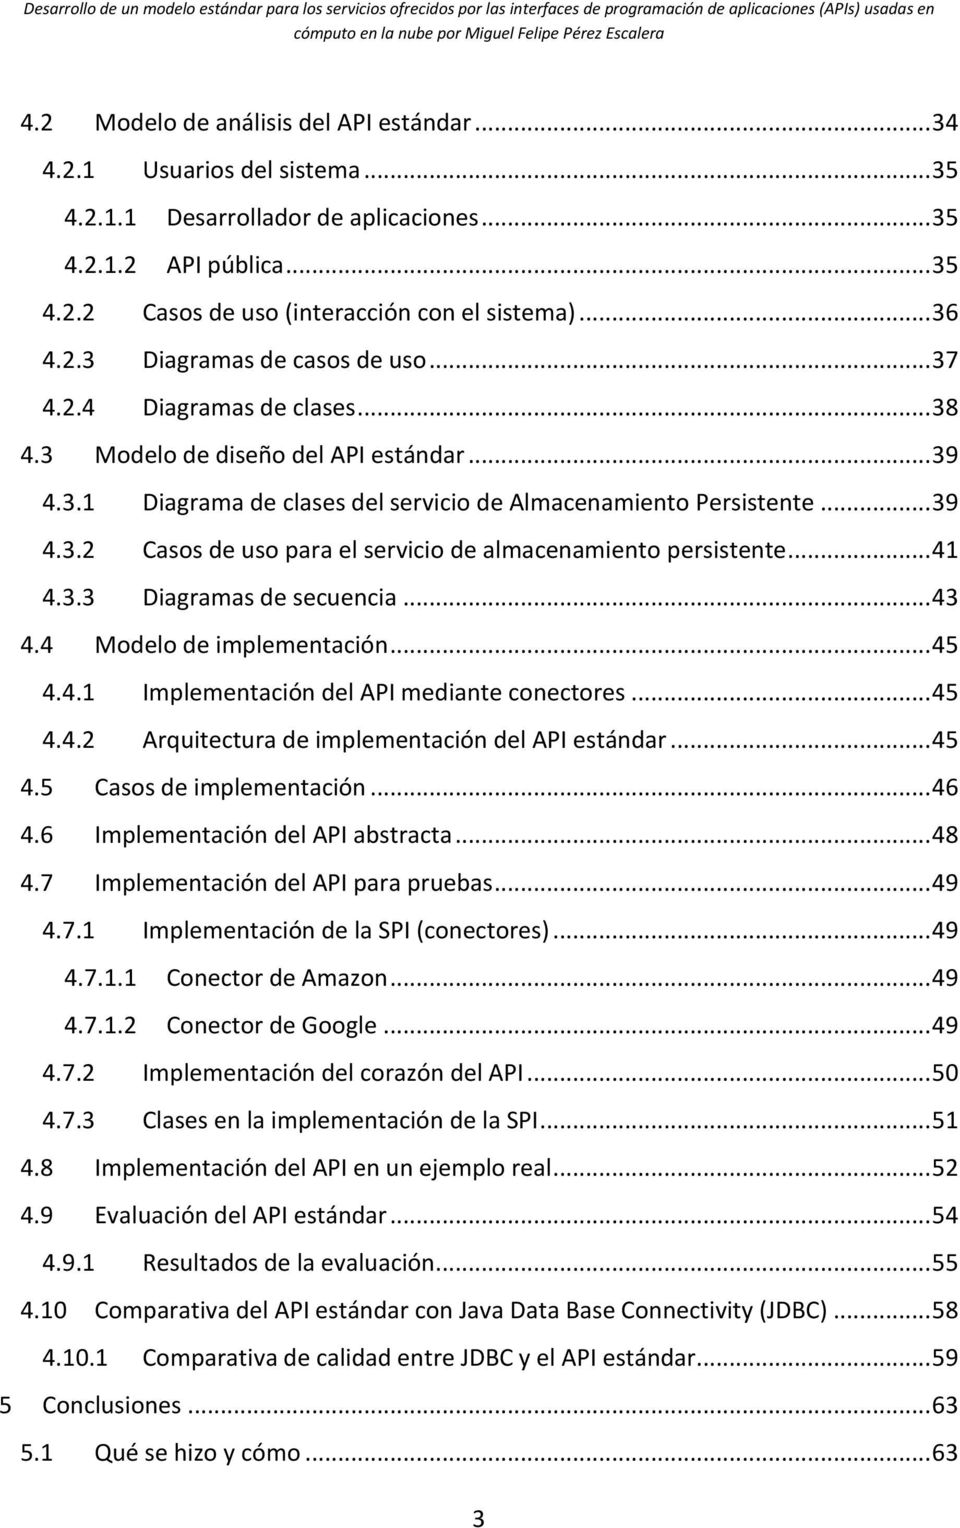 .. 41 4.3.3 Diagramas de secuencia... 43 4.4 Modelo de implementación... 45 4.4.1 Implementación del API mediante conectores... 45 4.4.2 Arquitectura de implementación del API estándar... 45 4.5 Casos de implementación.